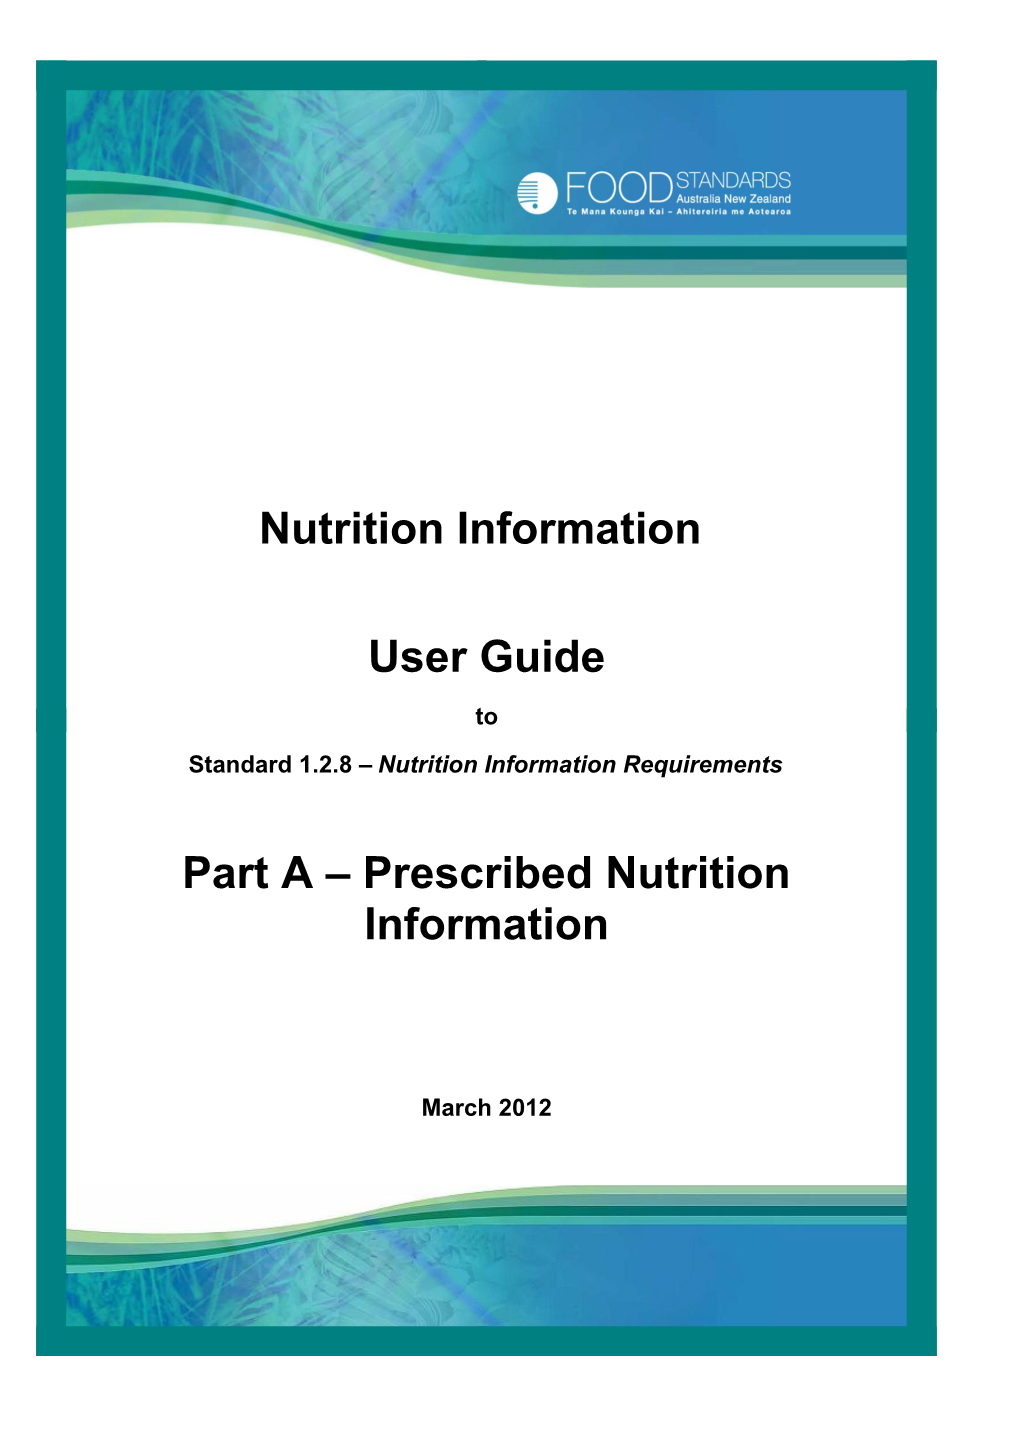 Userguide Prescribed Nutrition Information Parta March12